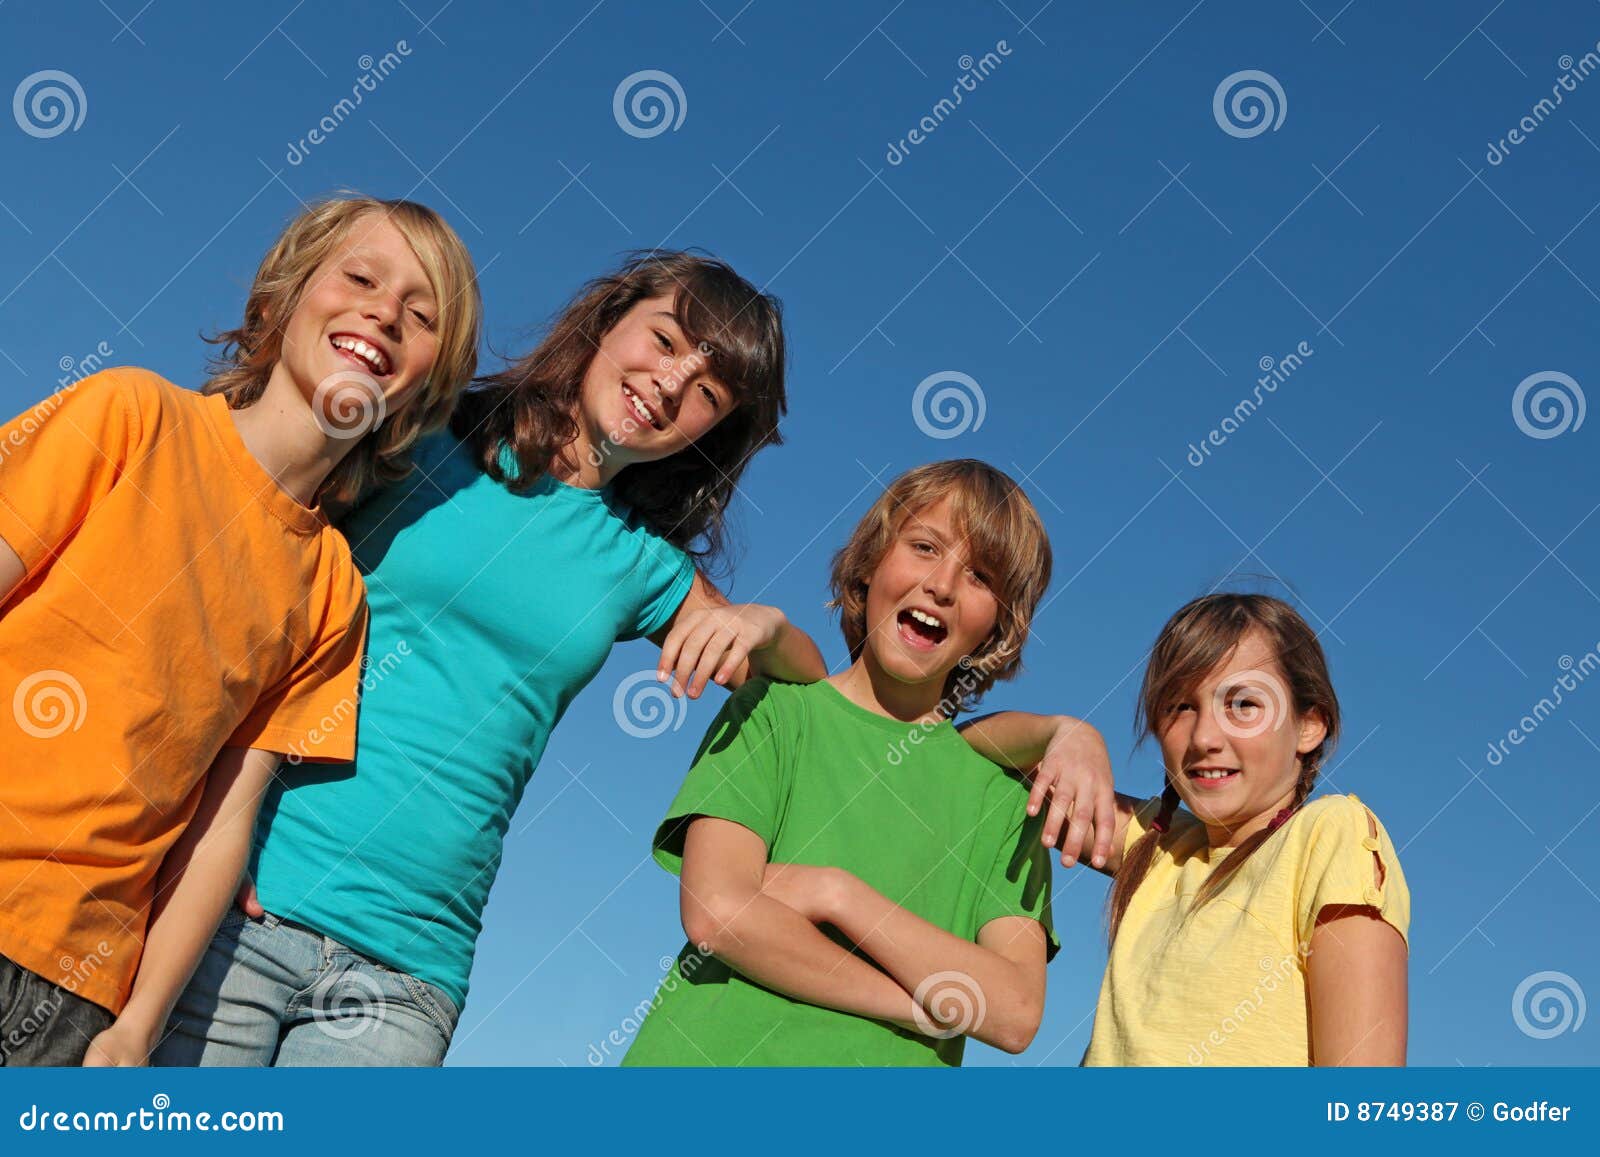 group of happy smiling kids or tweens